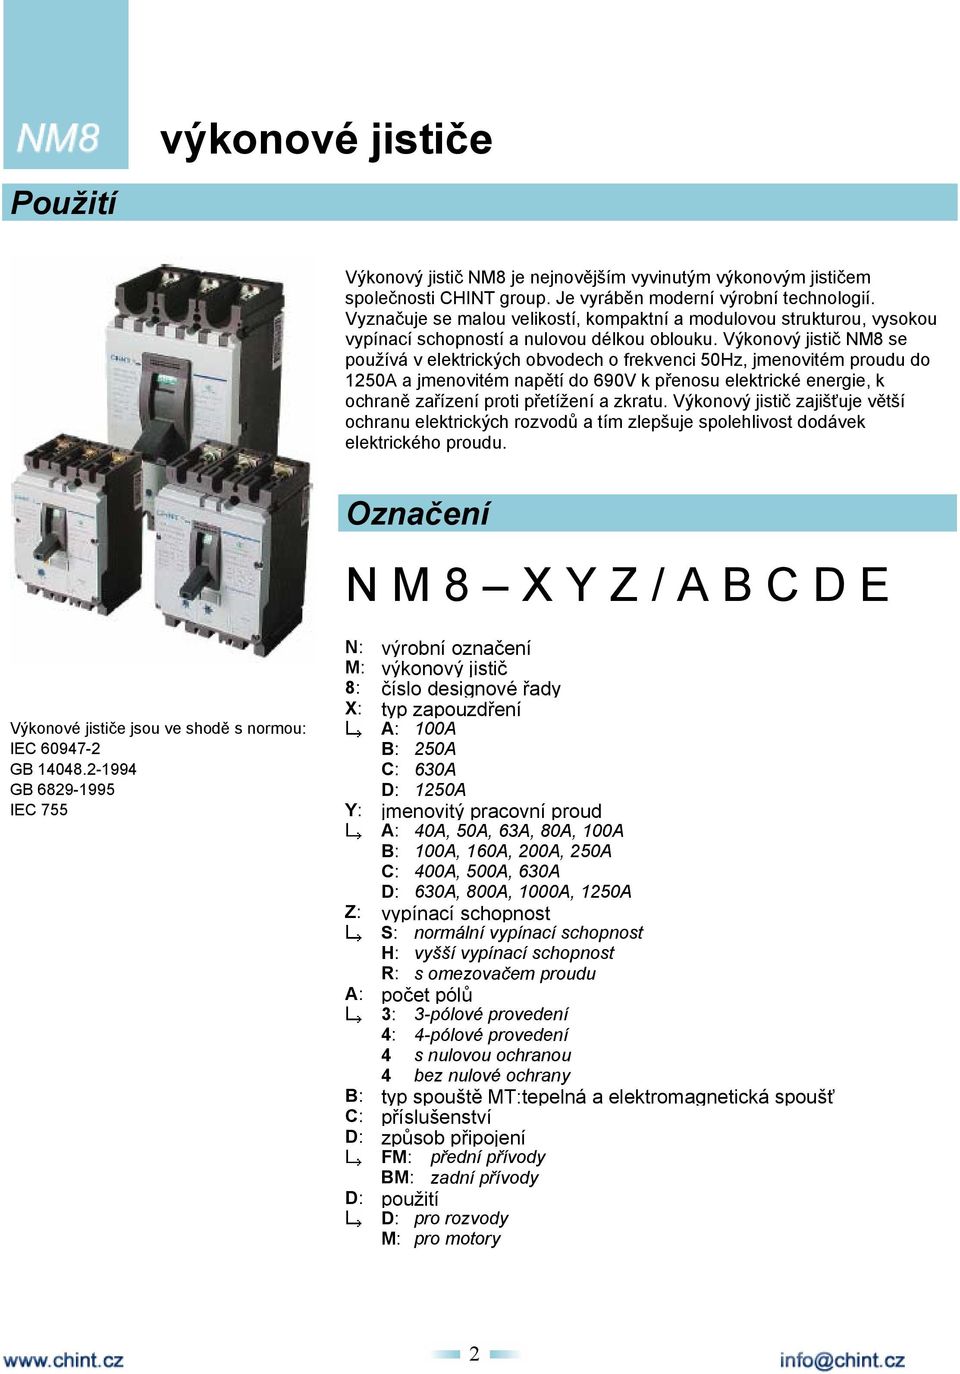 Výkonový jistič NM8 se používá v elektrických obvodech o frekvenci 50Hz, jmenovitém proudu do 1250A a jmenovitém napětí do 690V k přenosu elektrické energie, k ochraně zařízení proti přetížení a